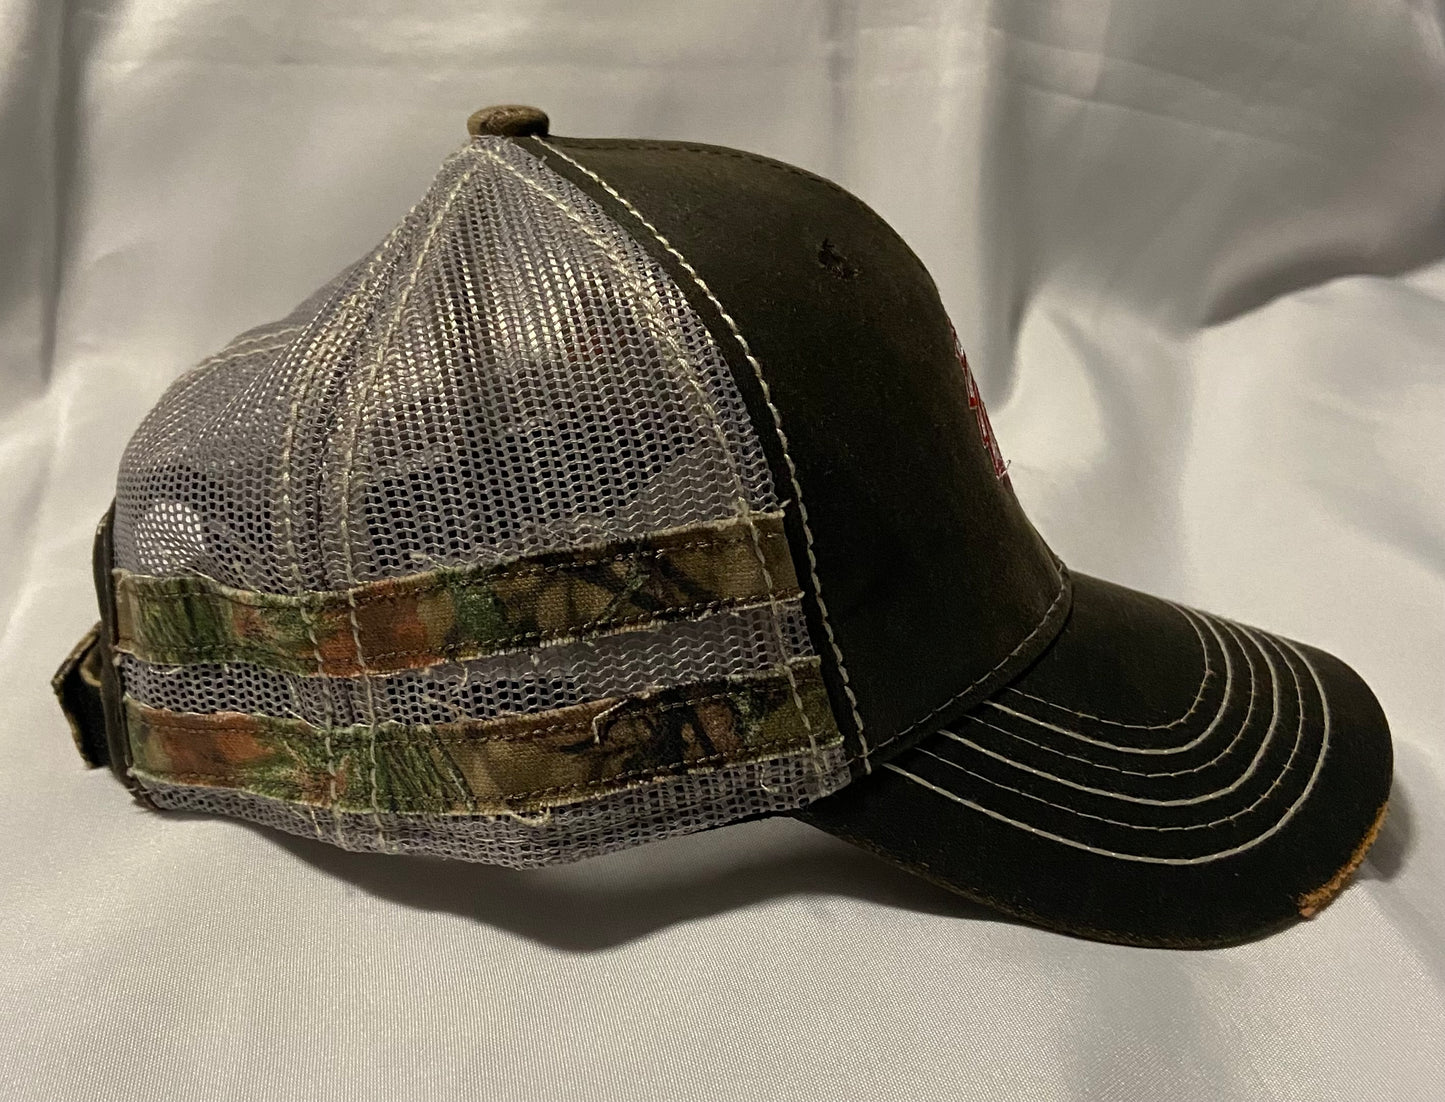 Knox Redskins Embroidered Hat - Frayed Camo Stripes - Adjustable